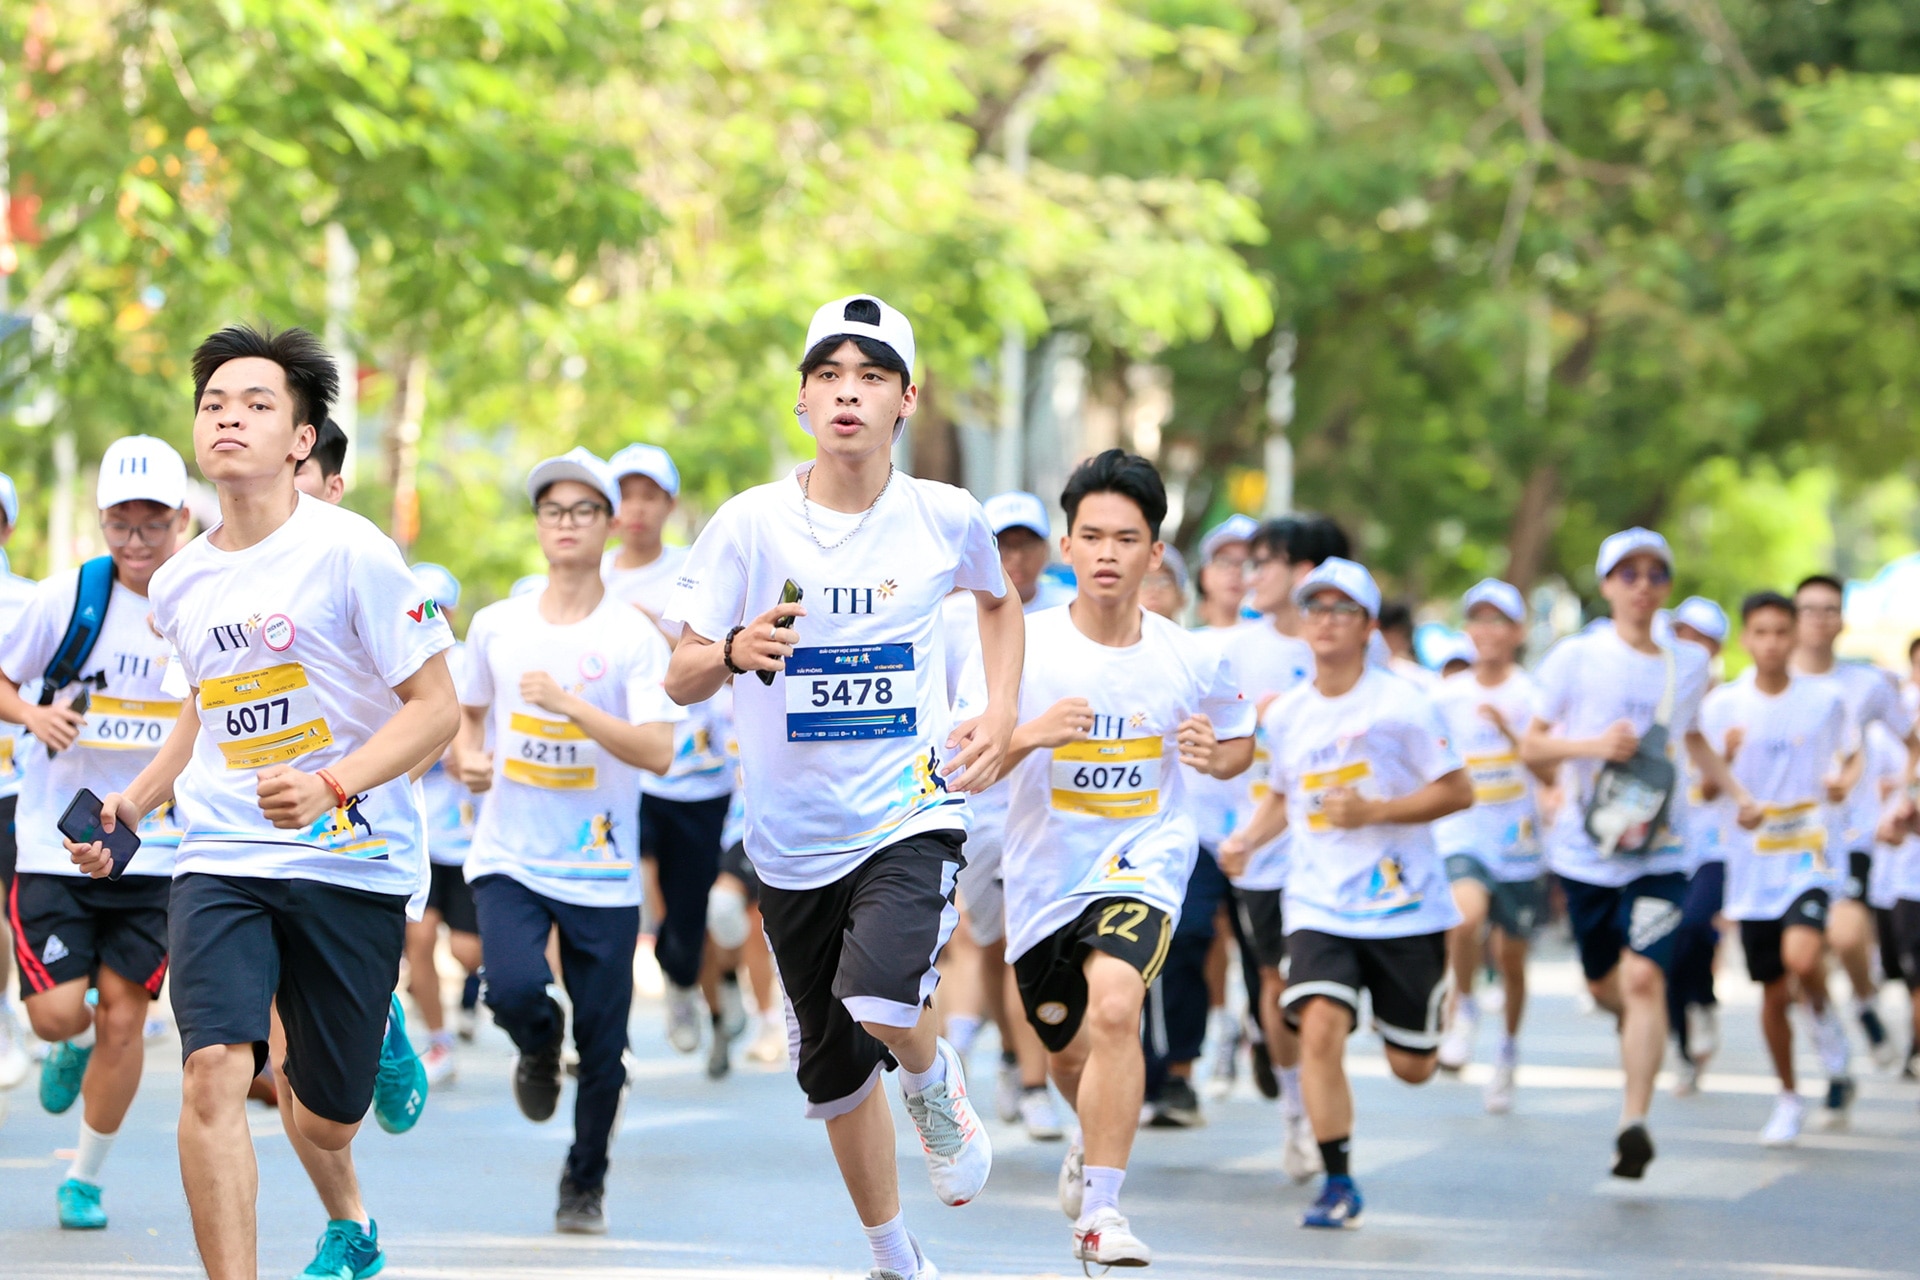 Tập đoàn TH đã đồng hành cùng nhiều hoạt động thúc đẩy thể thao học đường, tiêu biểu là giải chạy dành cho học sinh sinh viên mang tên S Race